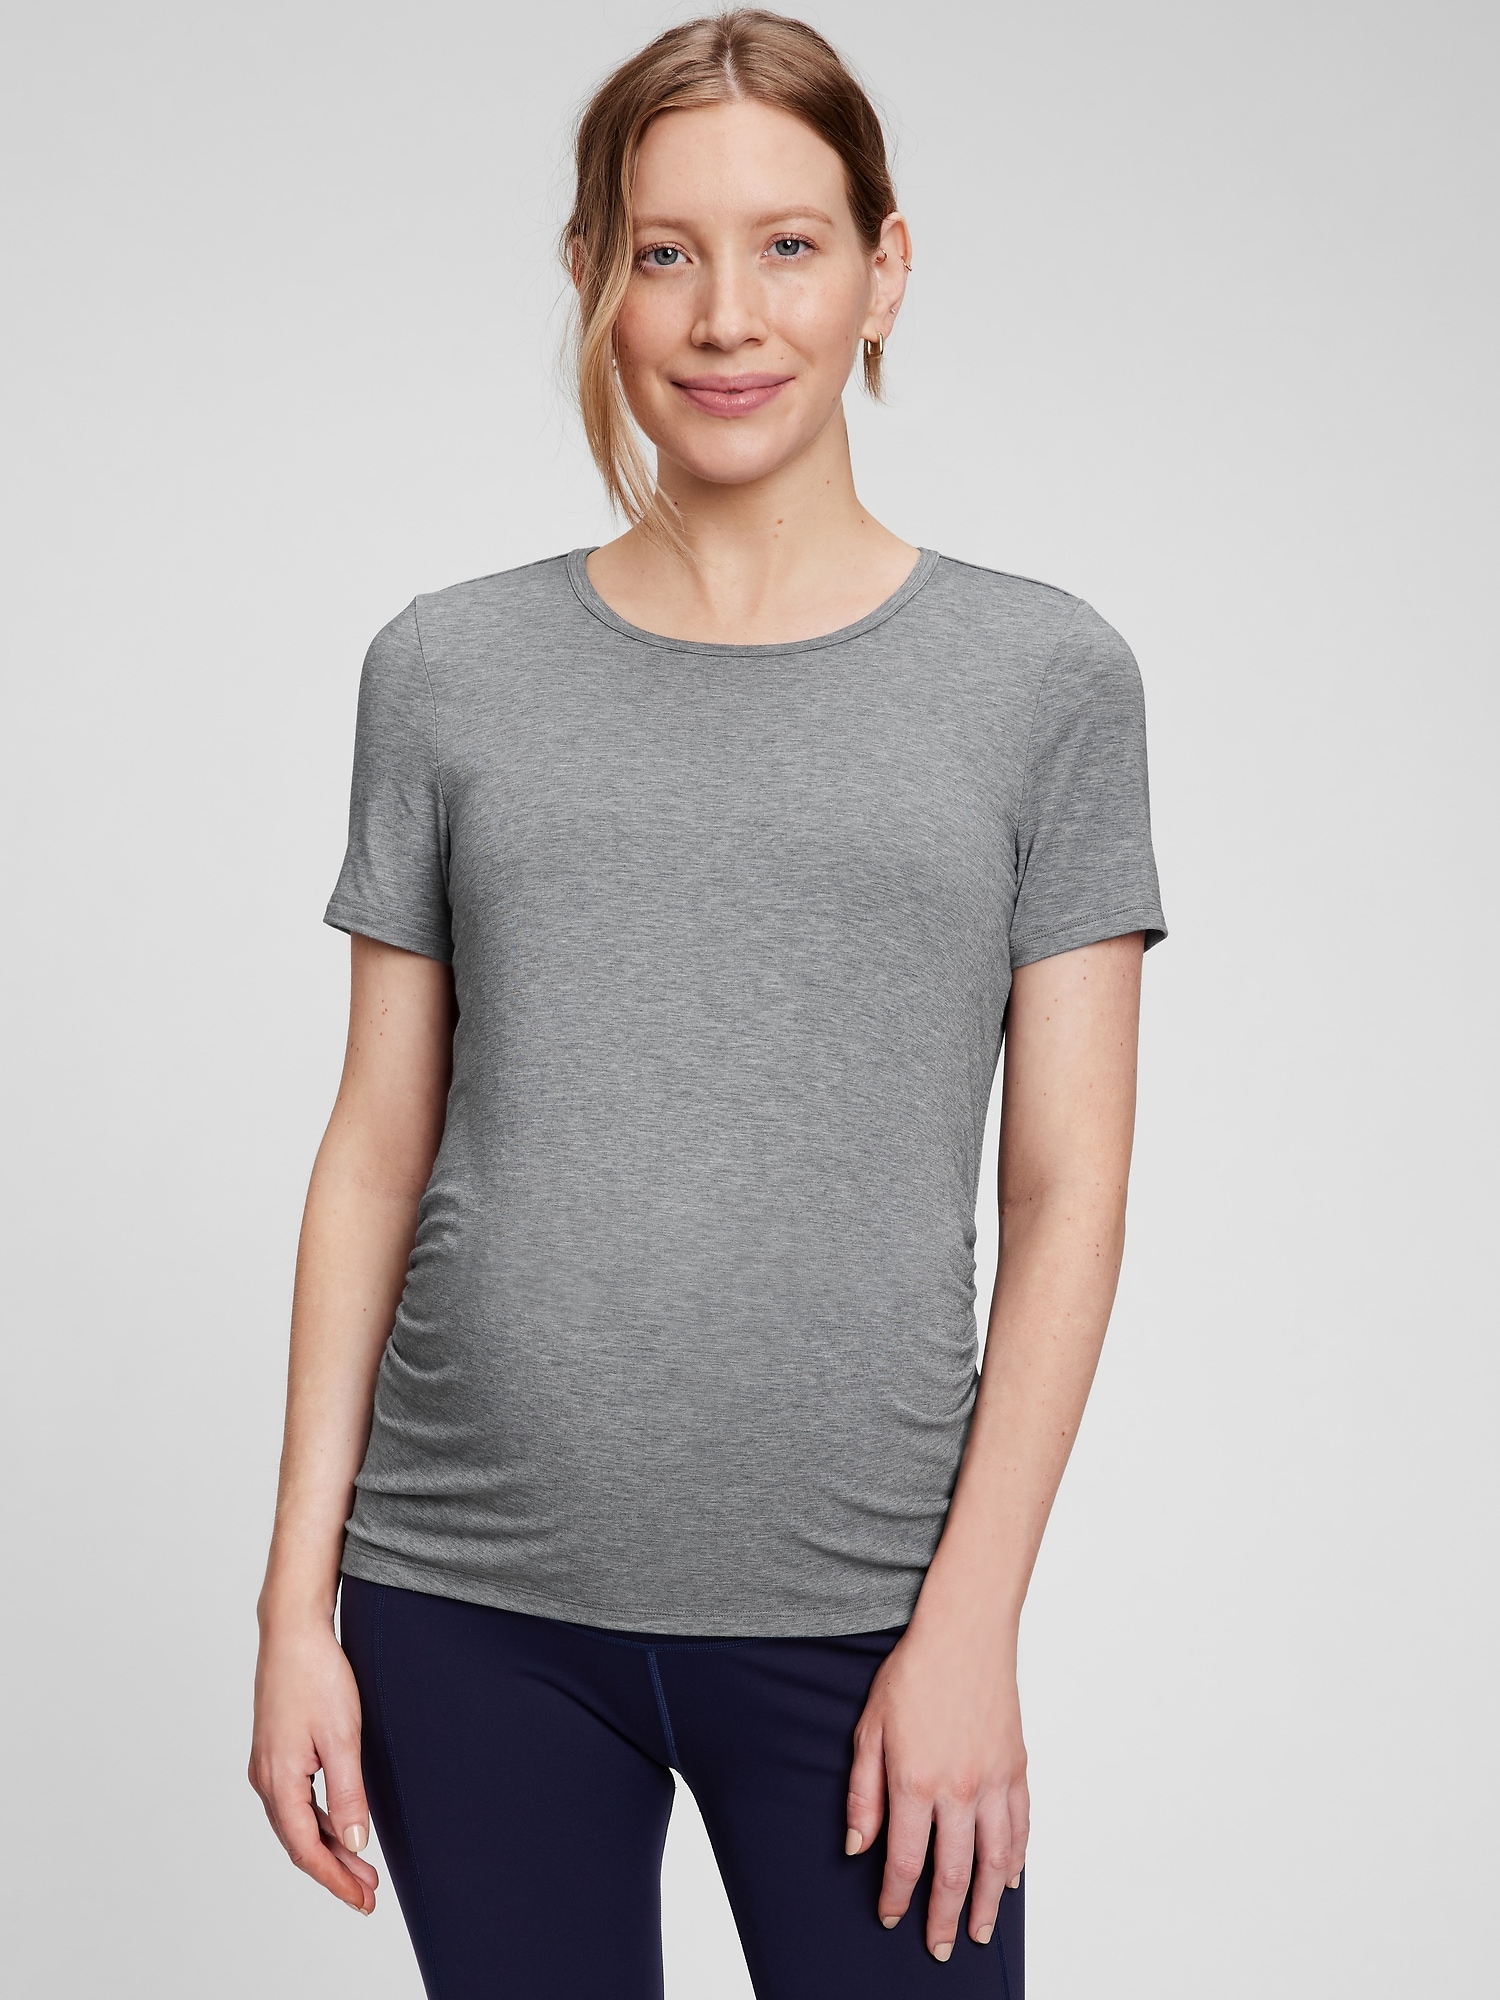 Gap Maternity GapFit Breathe V-Neck T-Shirt gray - 213550013